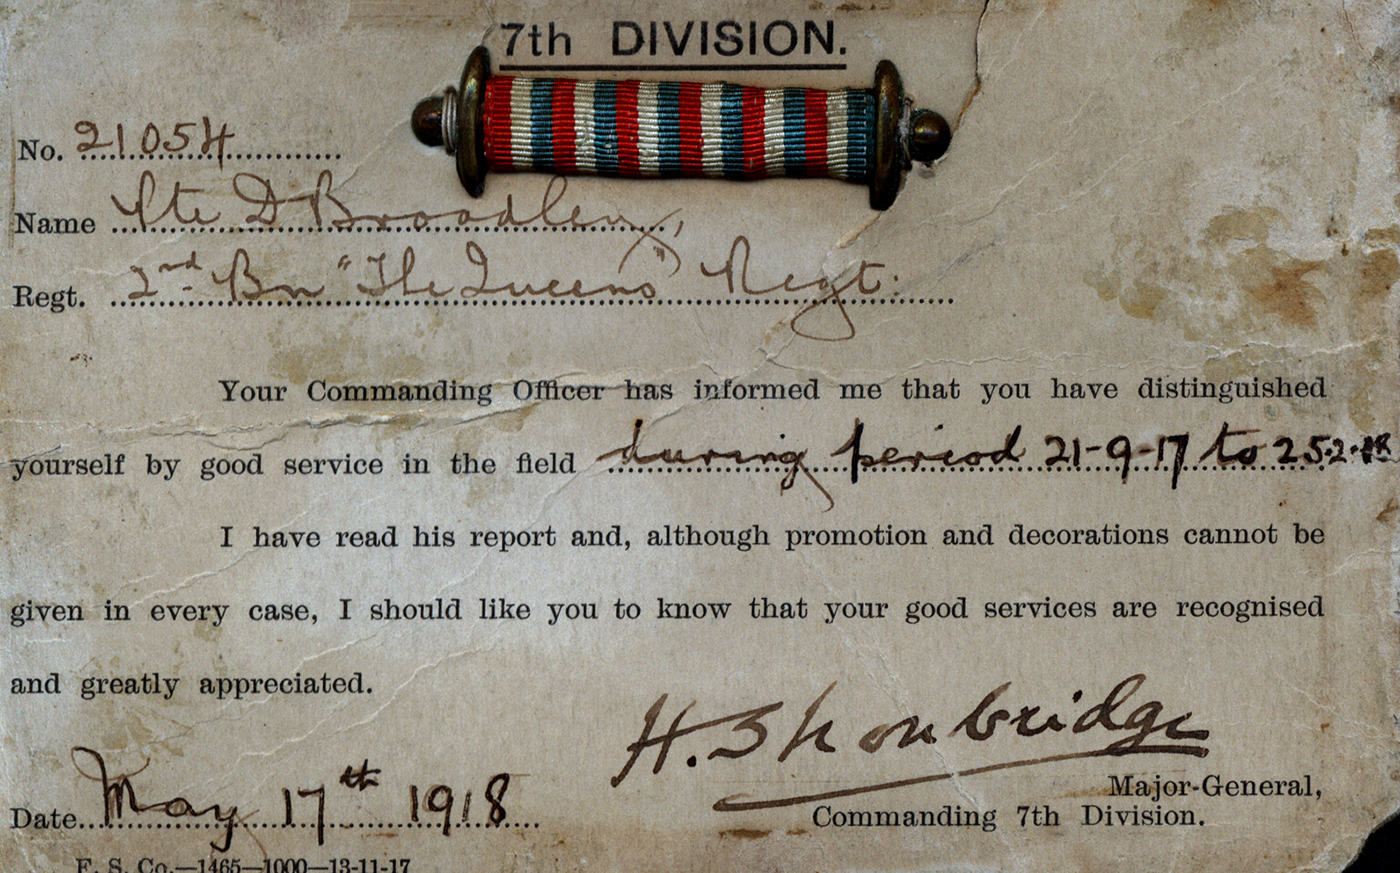 21054 Pte D Broadley 1917 distinguished service card